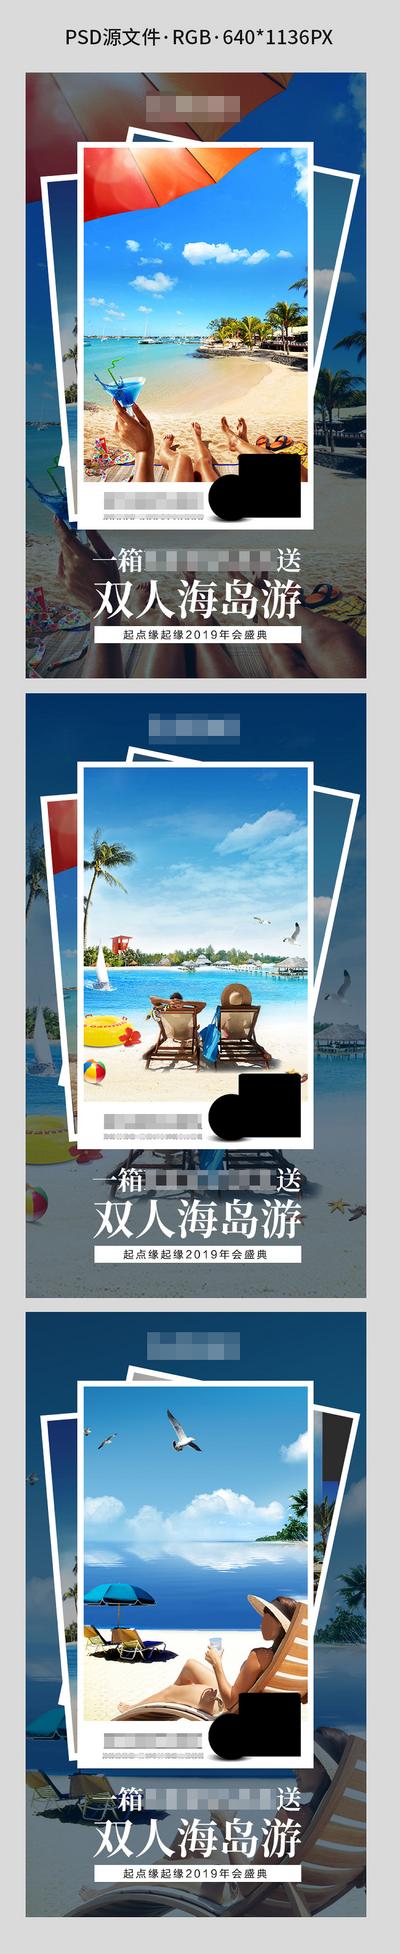 南门网 海报 旅游 旅行 海边 大海 阳光 沙滩 比基尼 游泳 微信 微商 招商 照片